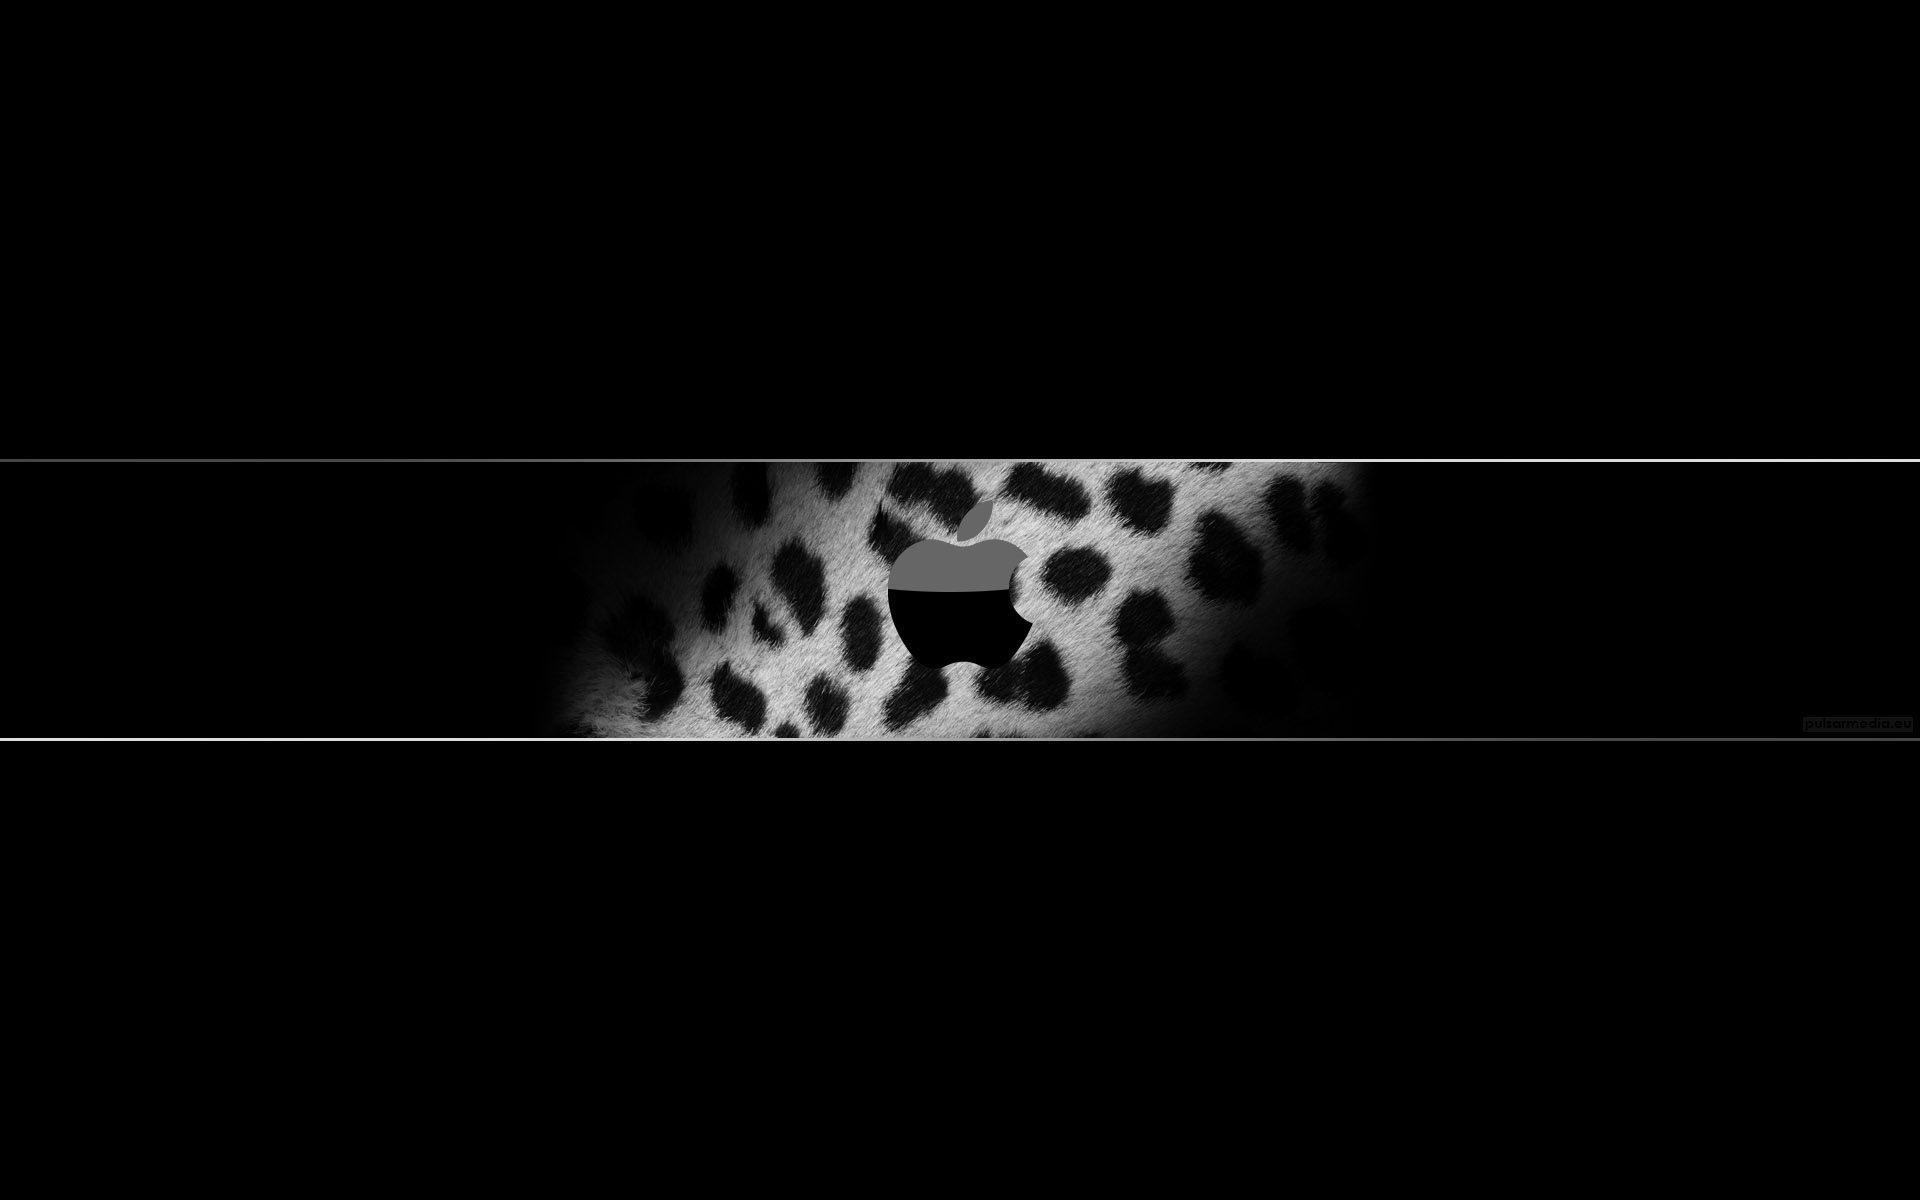 Macbook leopard wallpaper - Backgrounds